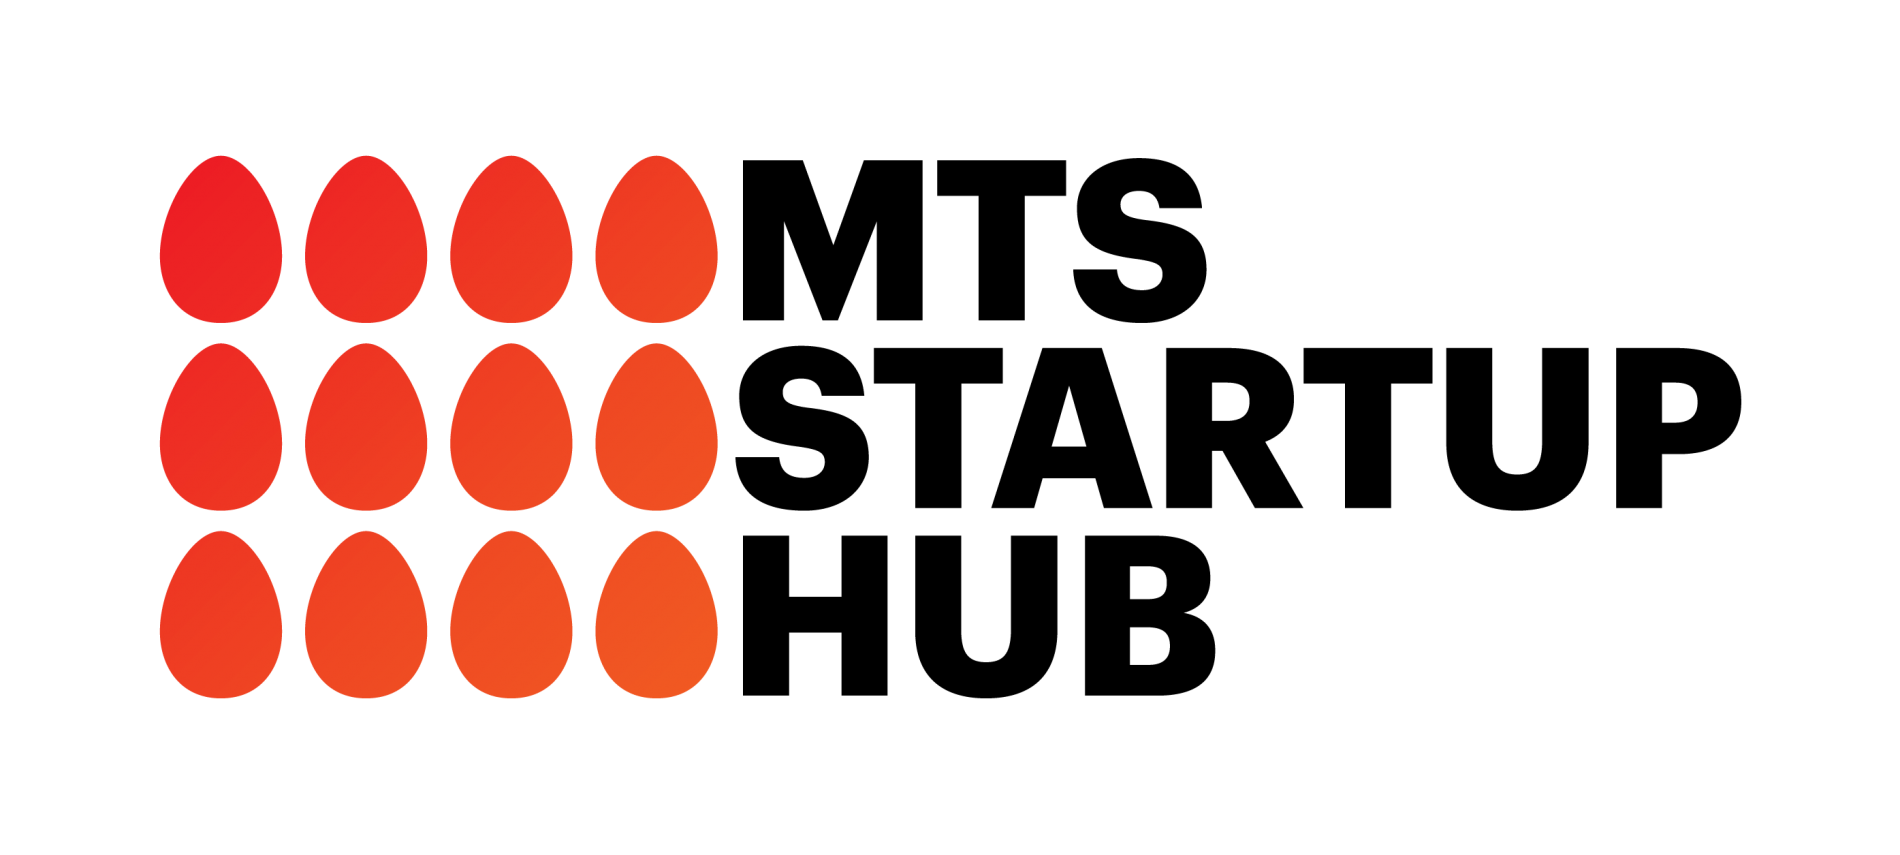 Центр инноваций и инвестиций MTS StartUp Hub приглашает к сотрудничеству разработчиков